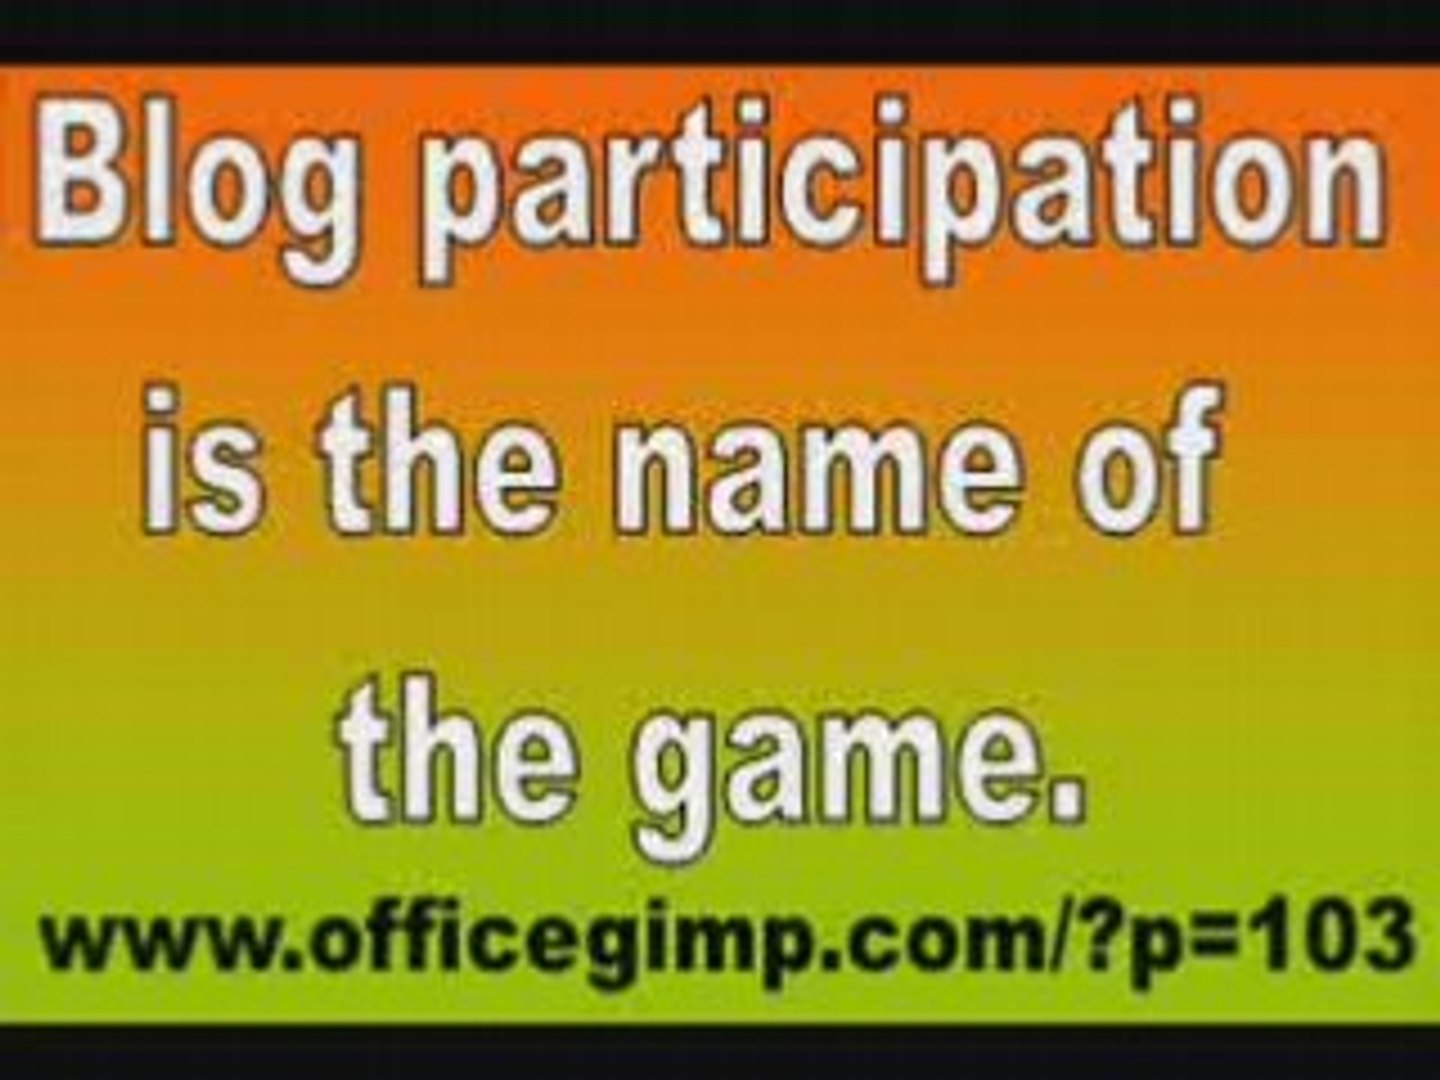 OfficeGimp.com Participate in blogs